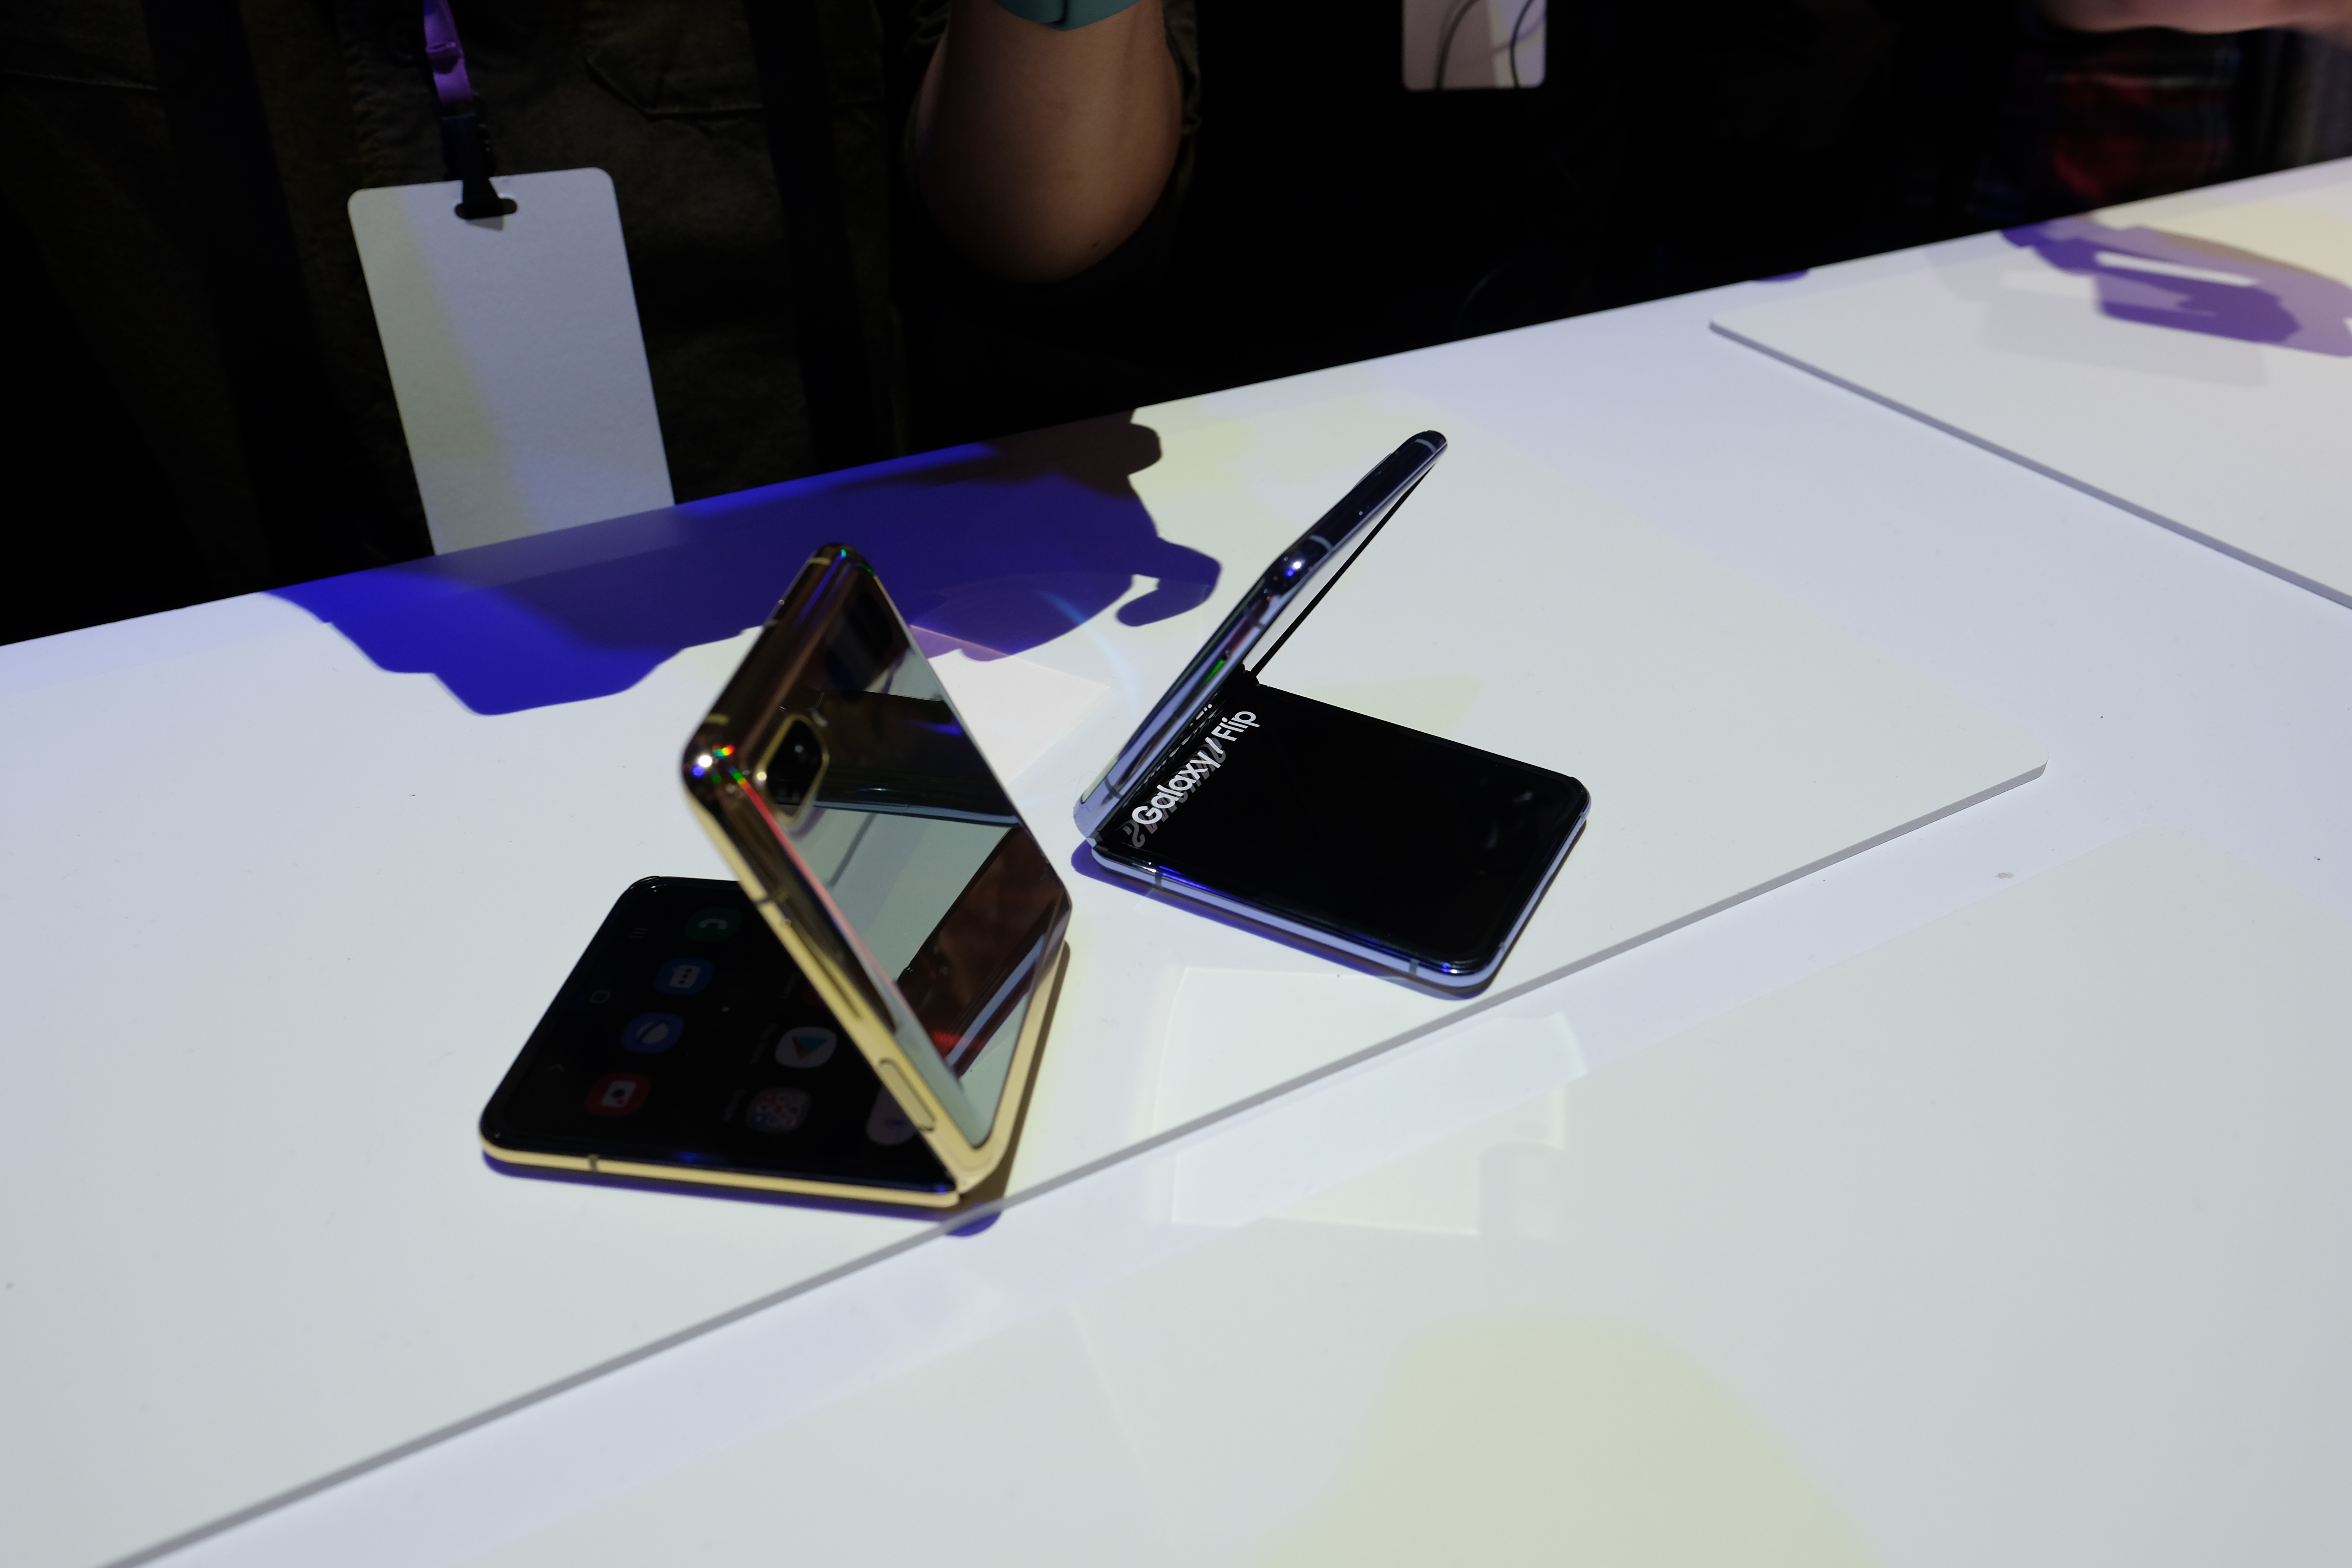 Cận cảnh smartphone màn hình gập Galaxy Z Flip - Nhỏ gọn và bóng bẩy